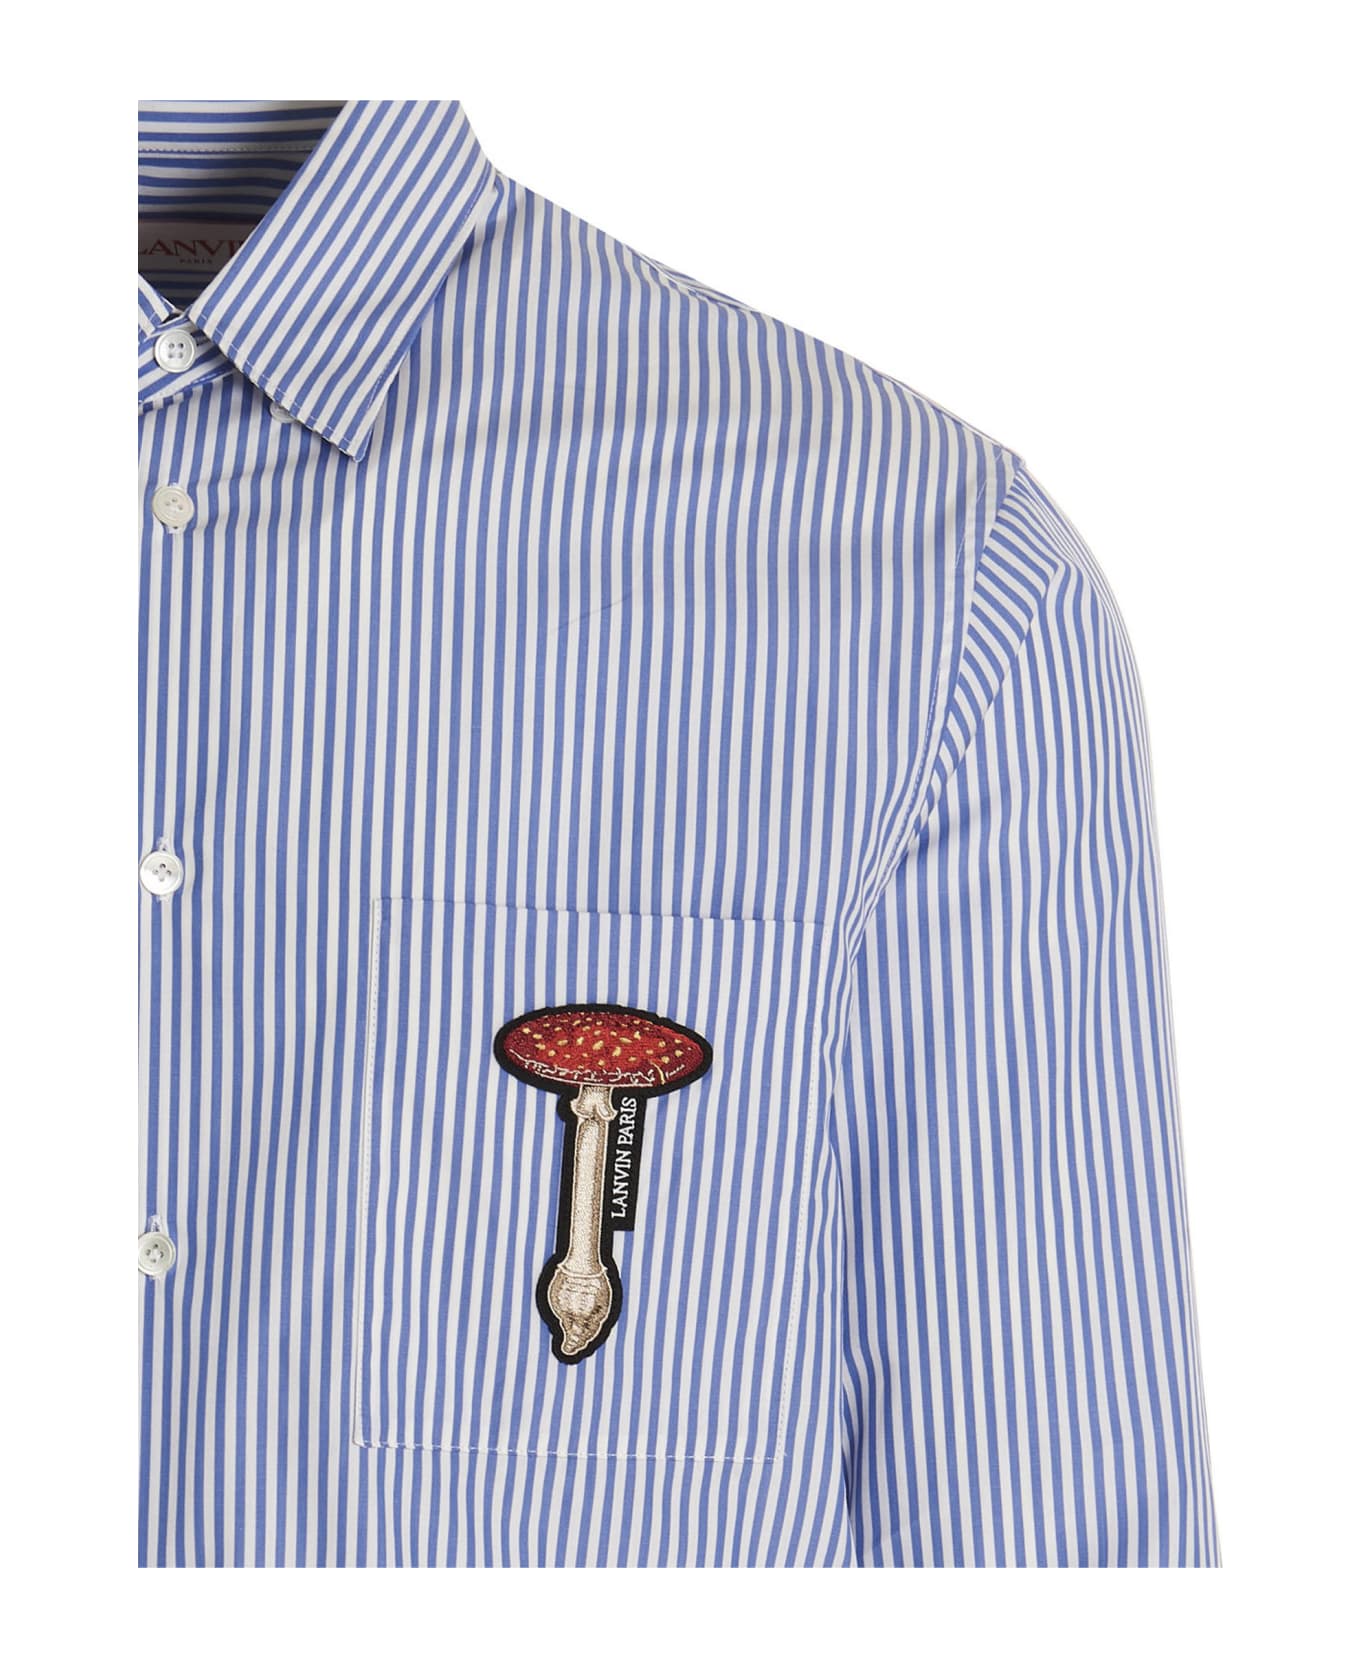 Lanvin Mushroom Patch Shirt - Multicolor